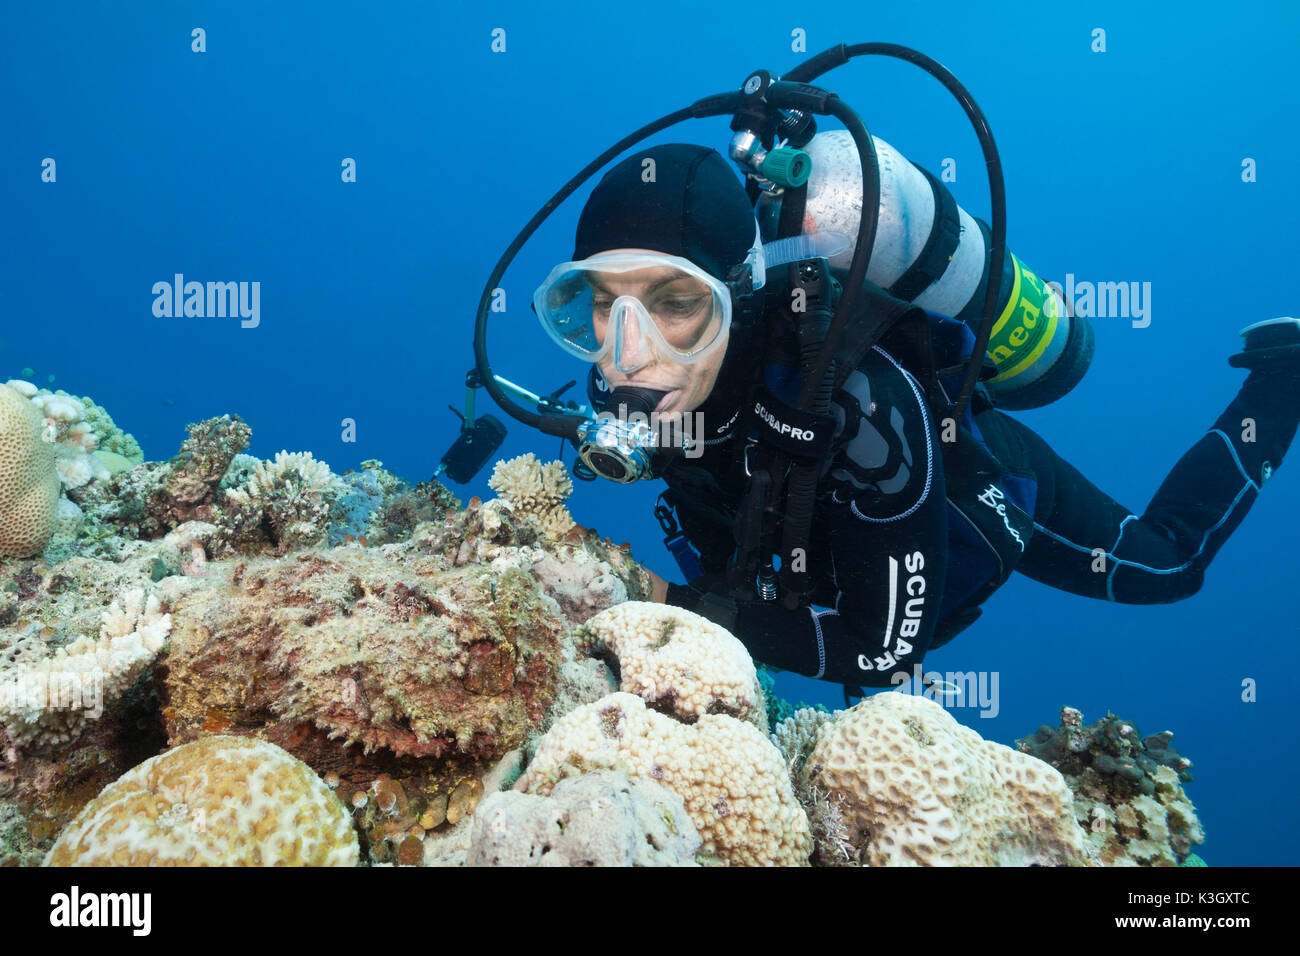 Riff-Steinfisch, Synanceia verzweigt, Osprey Reef, Coral Sea, Australien Stockfoto